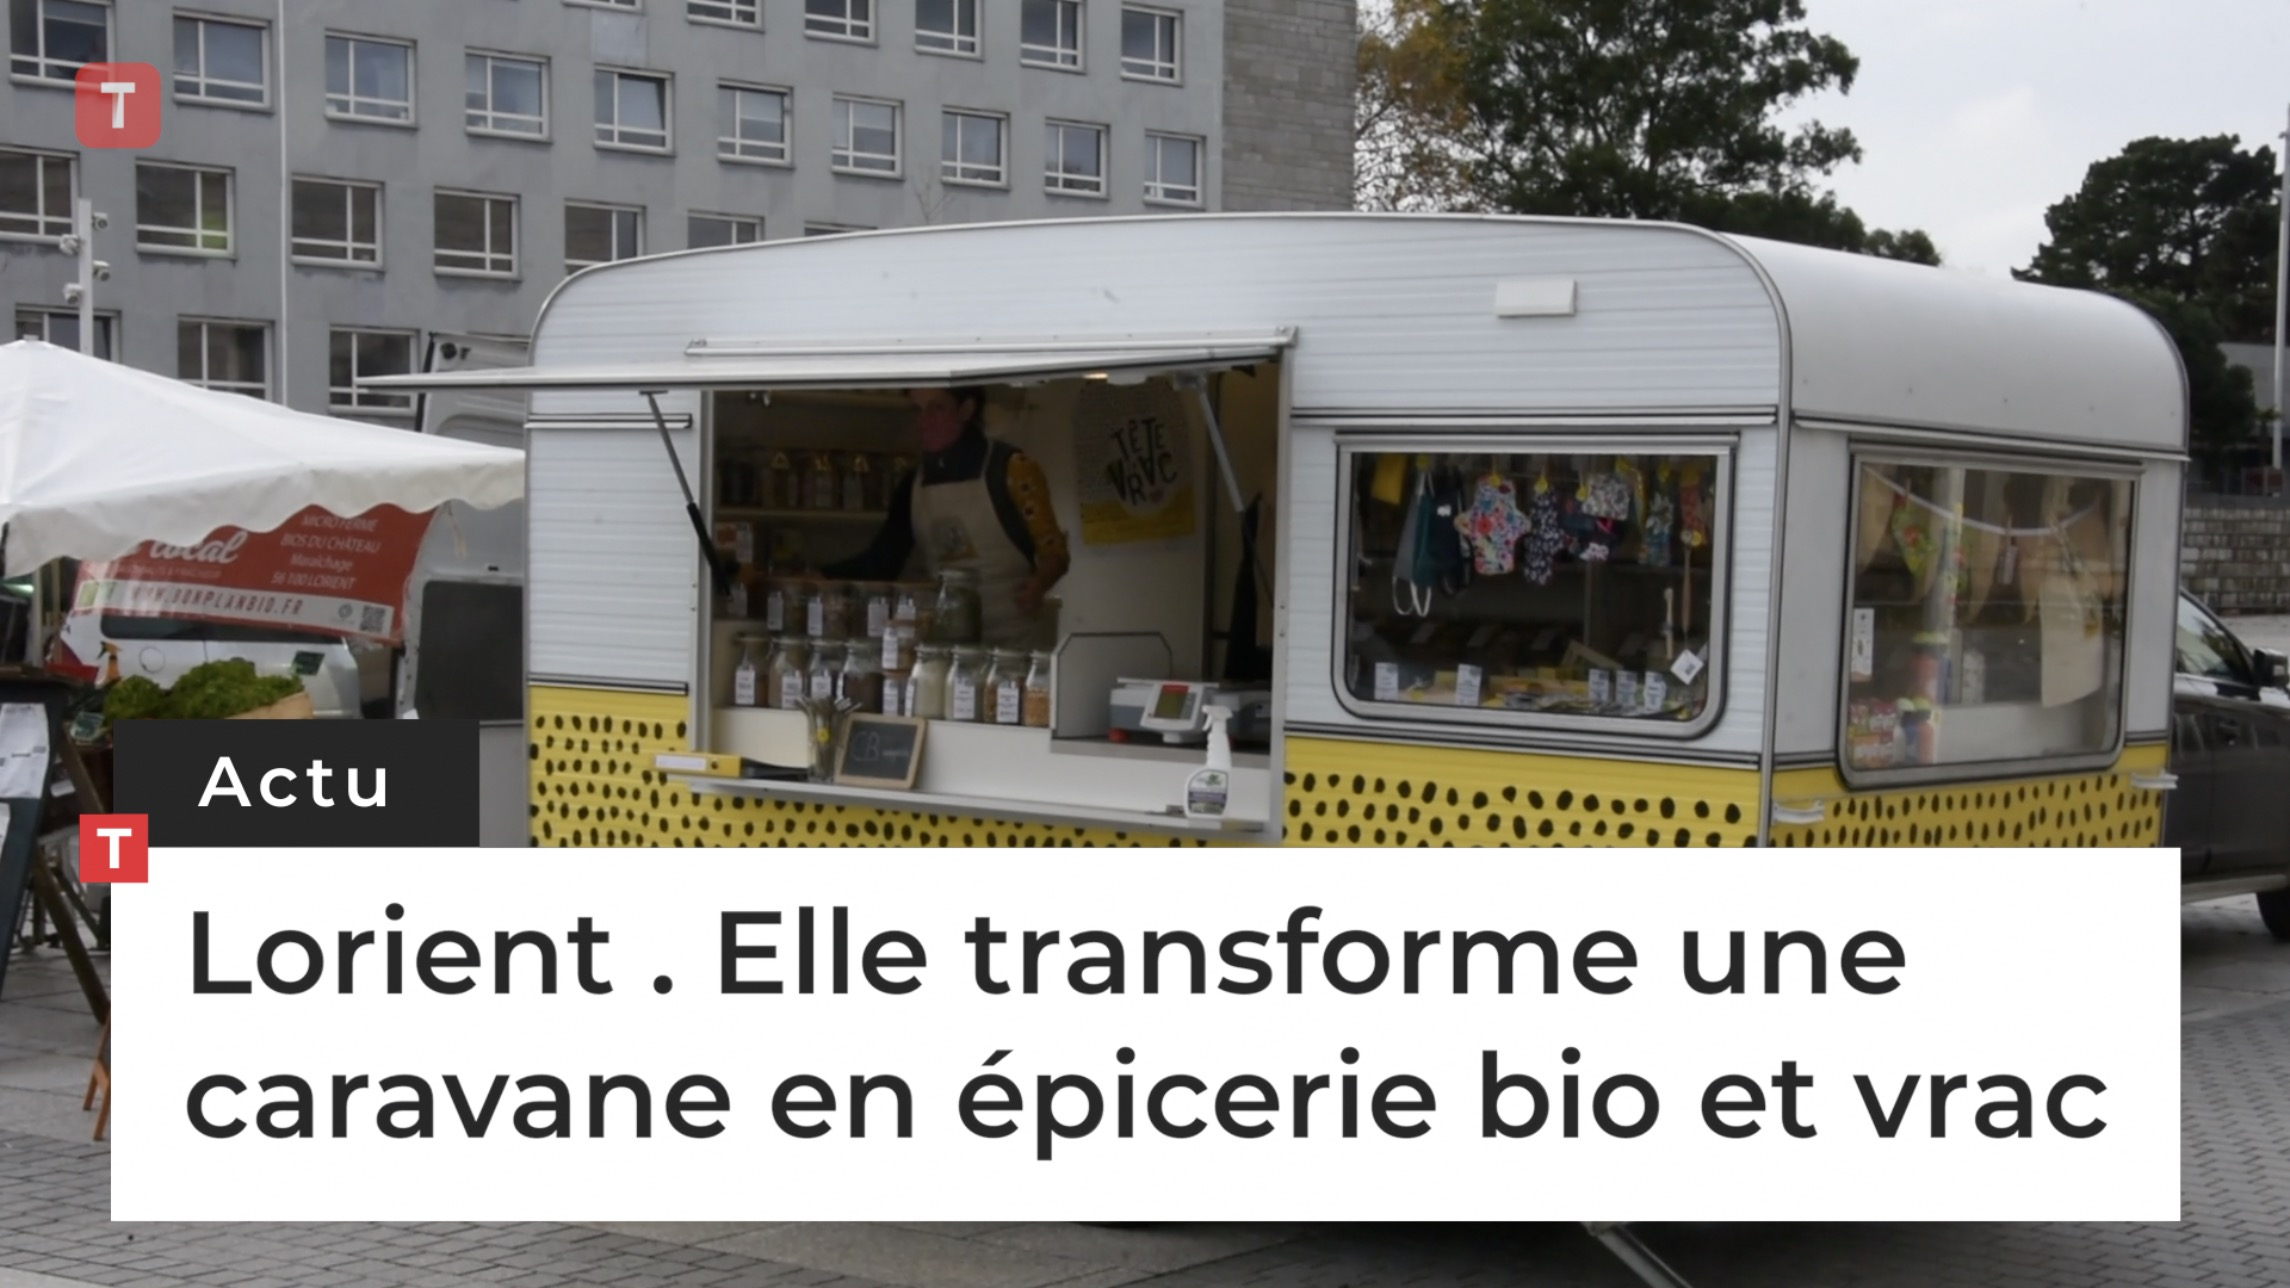 Lorient. Elle transforme une caravane en épicerie bio et vrac (Le Télégramme)